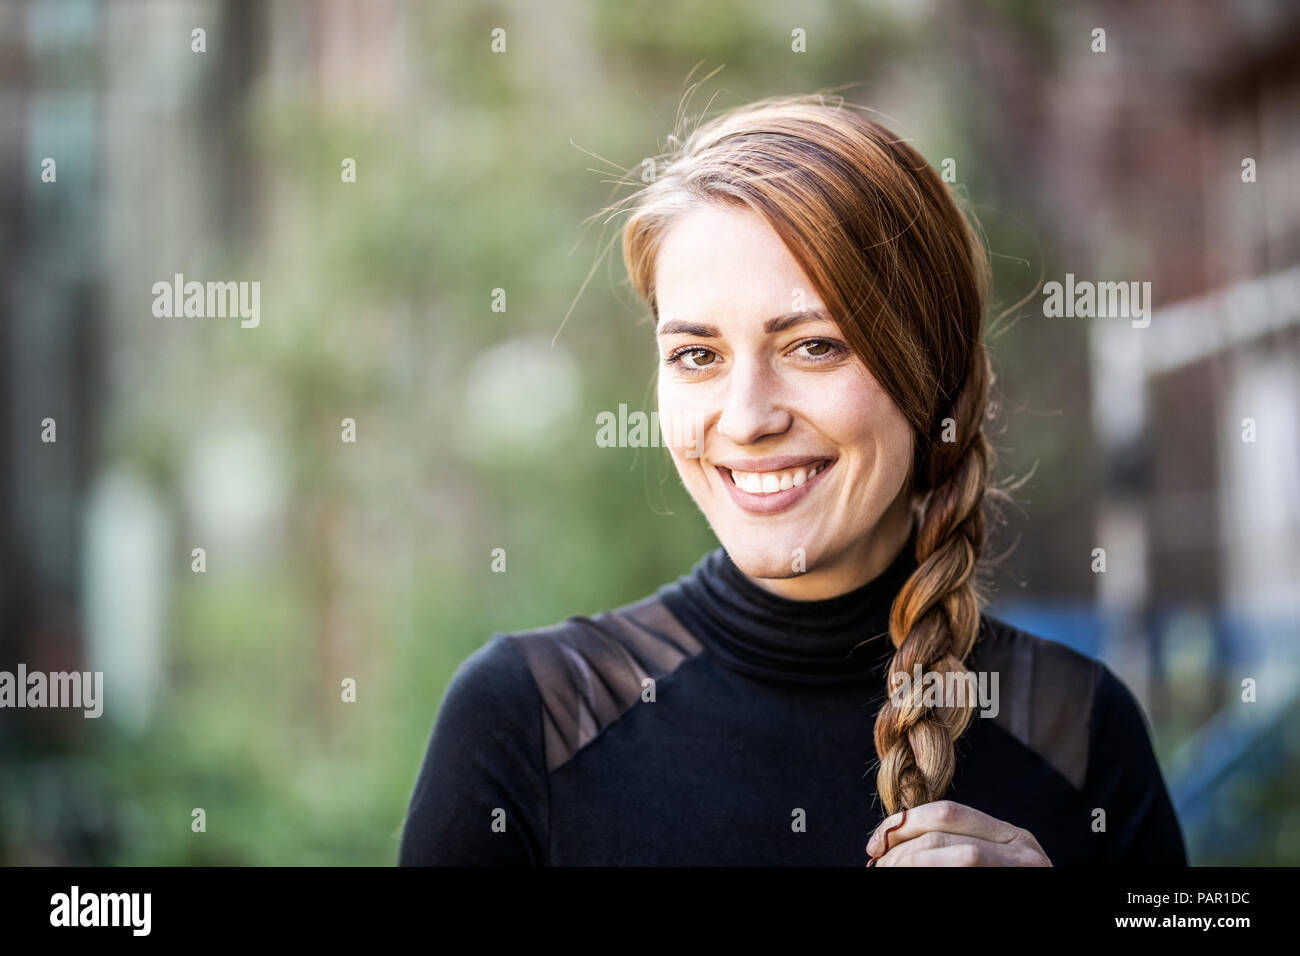 Retrato de mujer sonriente con trenza Foto de stock